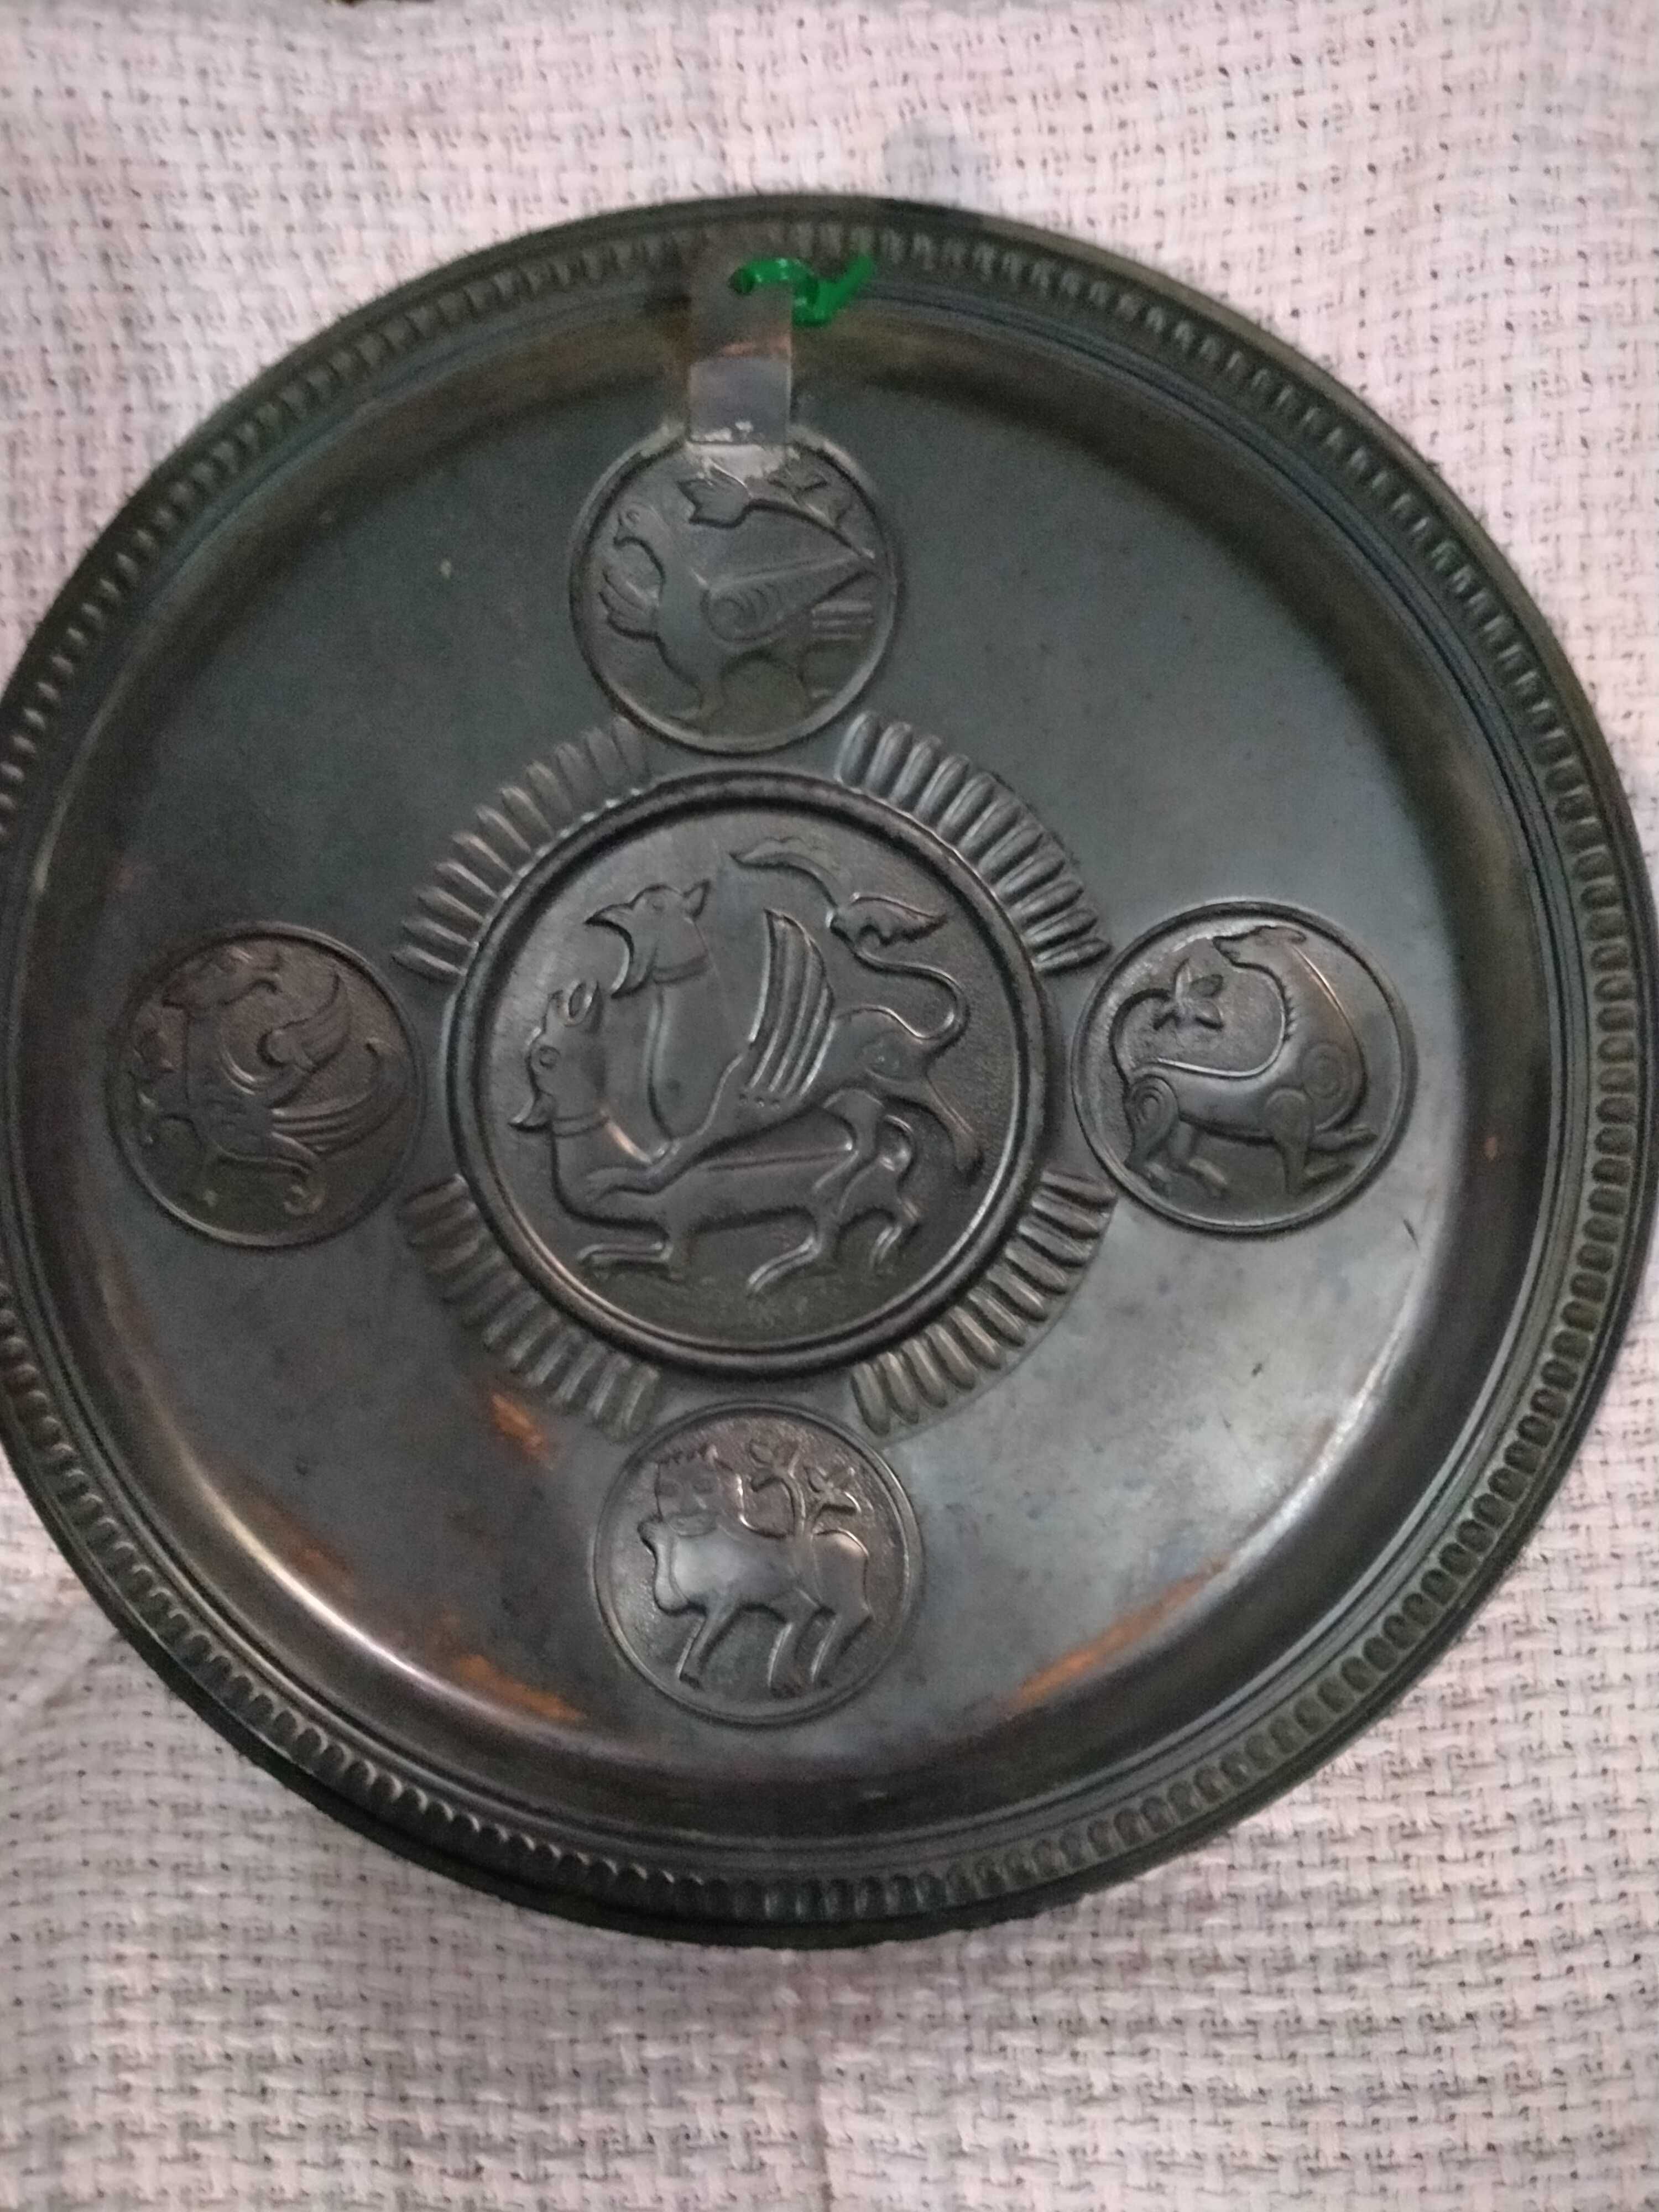 Тарелка декоративная медная, медь, с орнаментом .Набор из 3 тарелок.